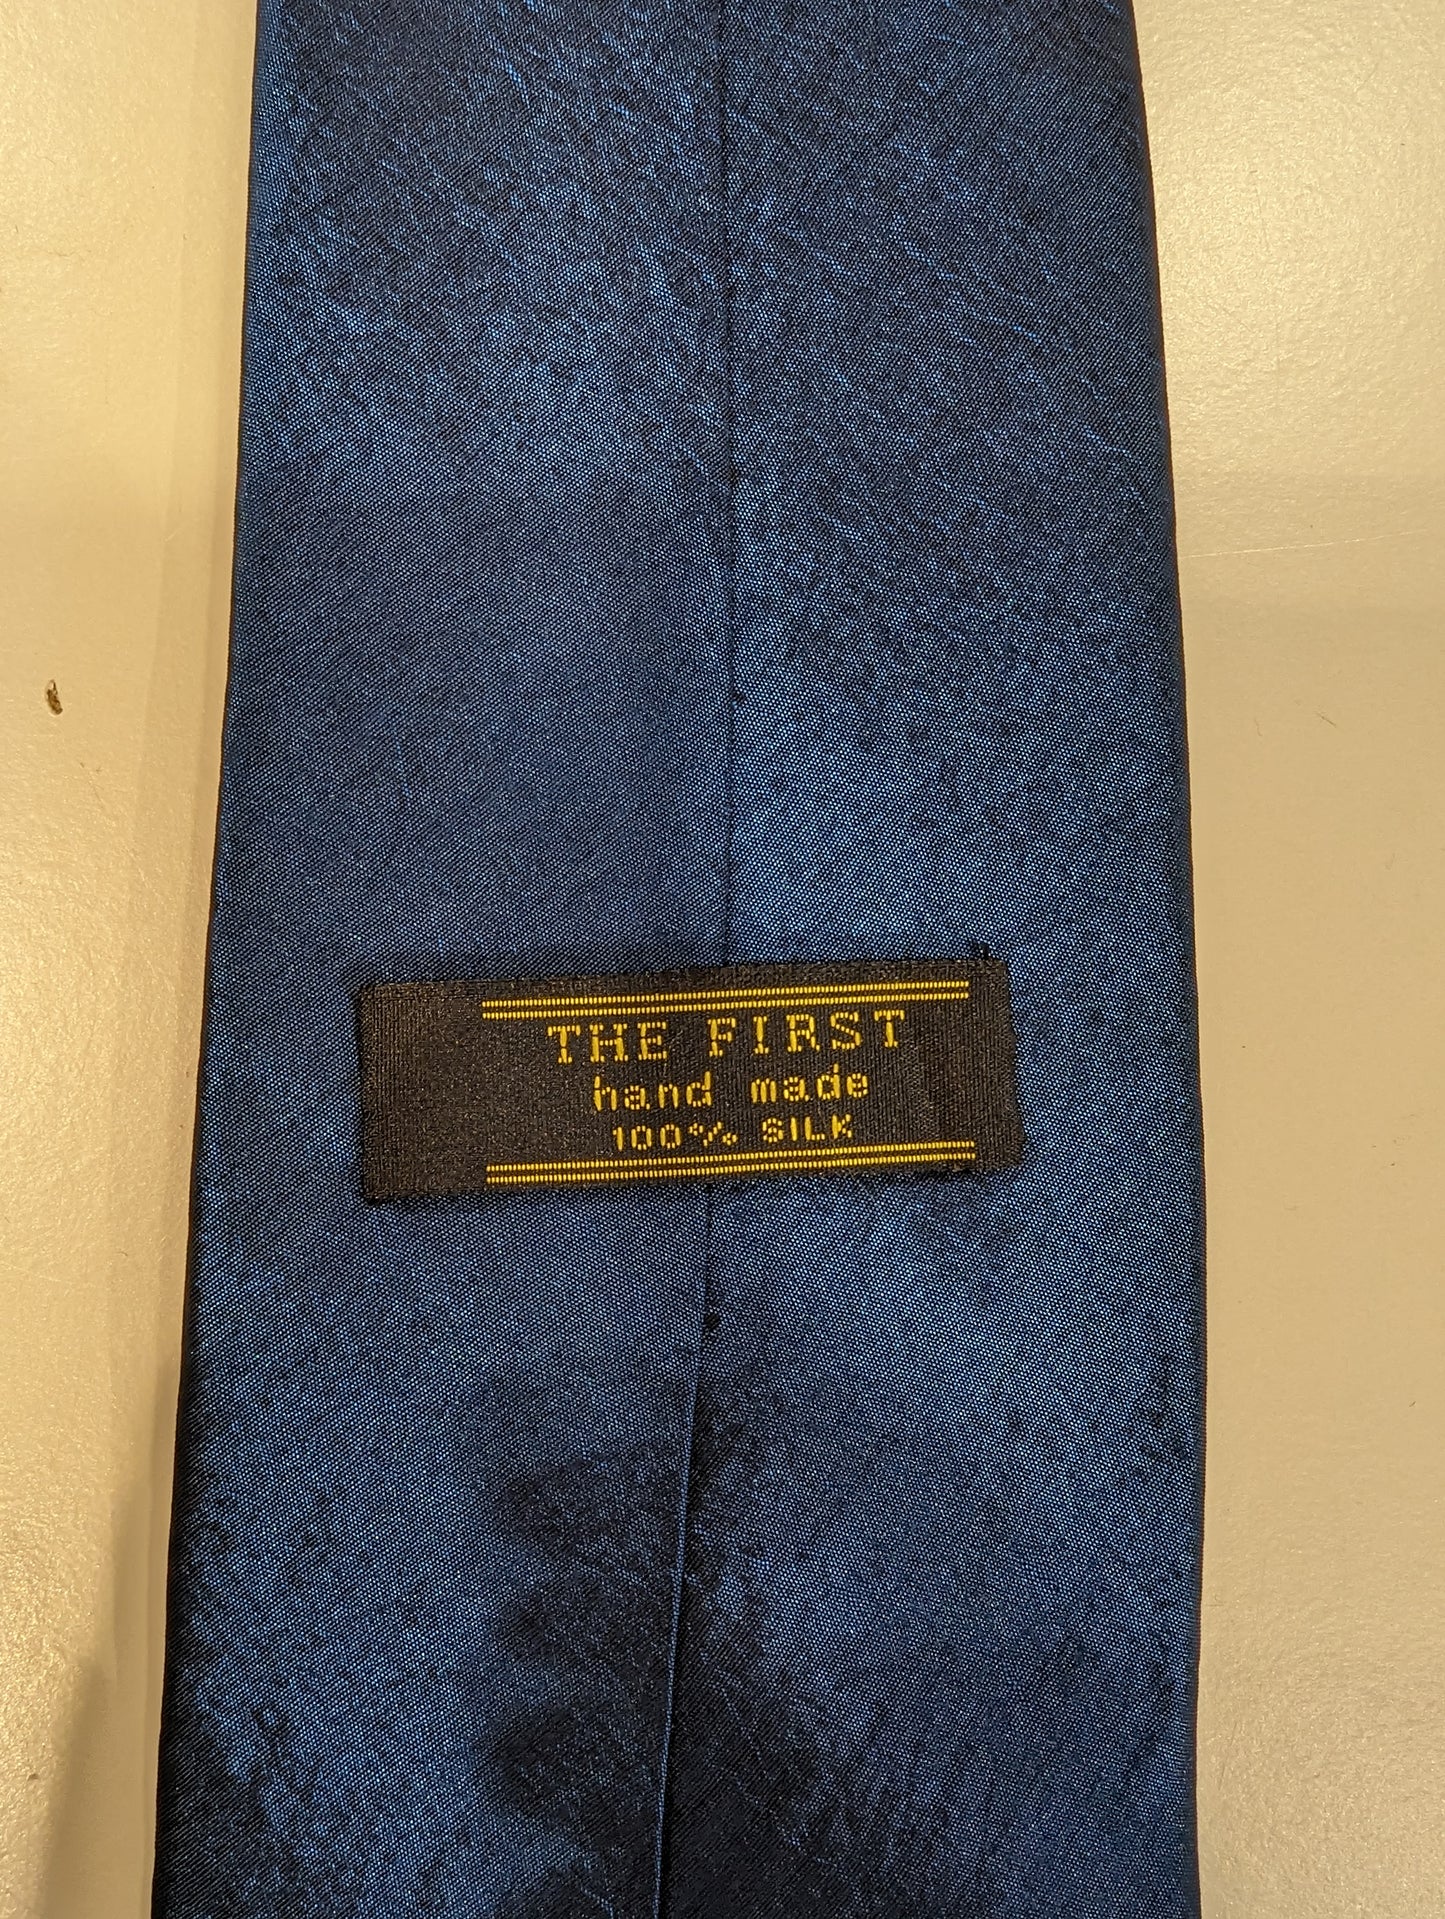 The First vintage metallic blauw zijde stropdas. Hand made.